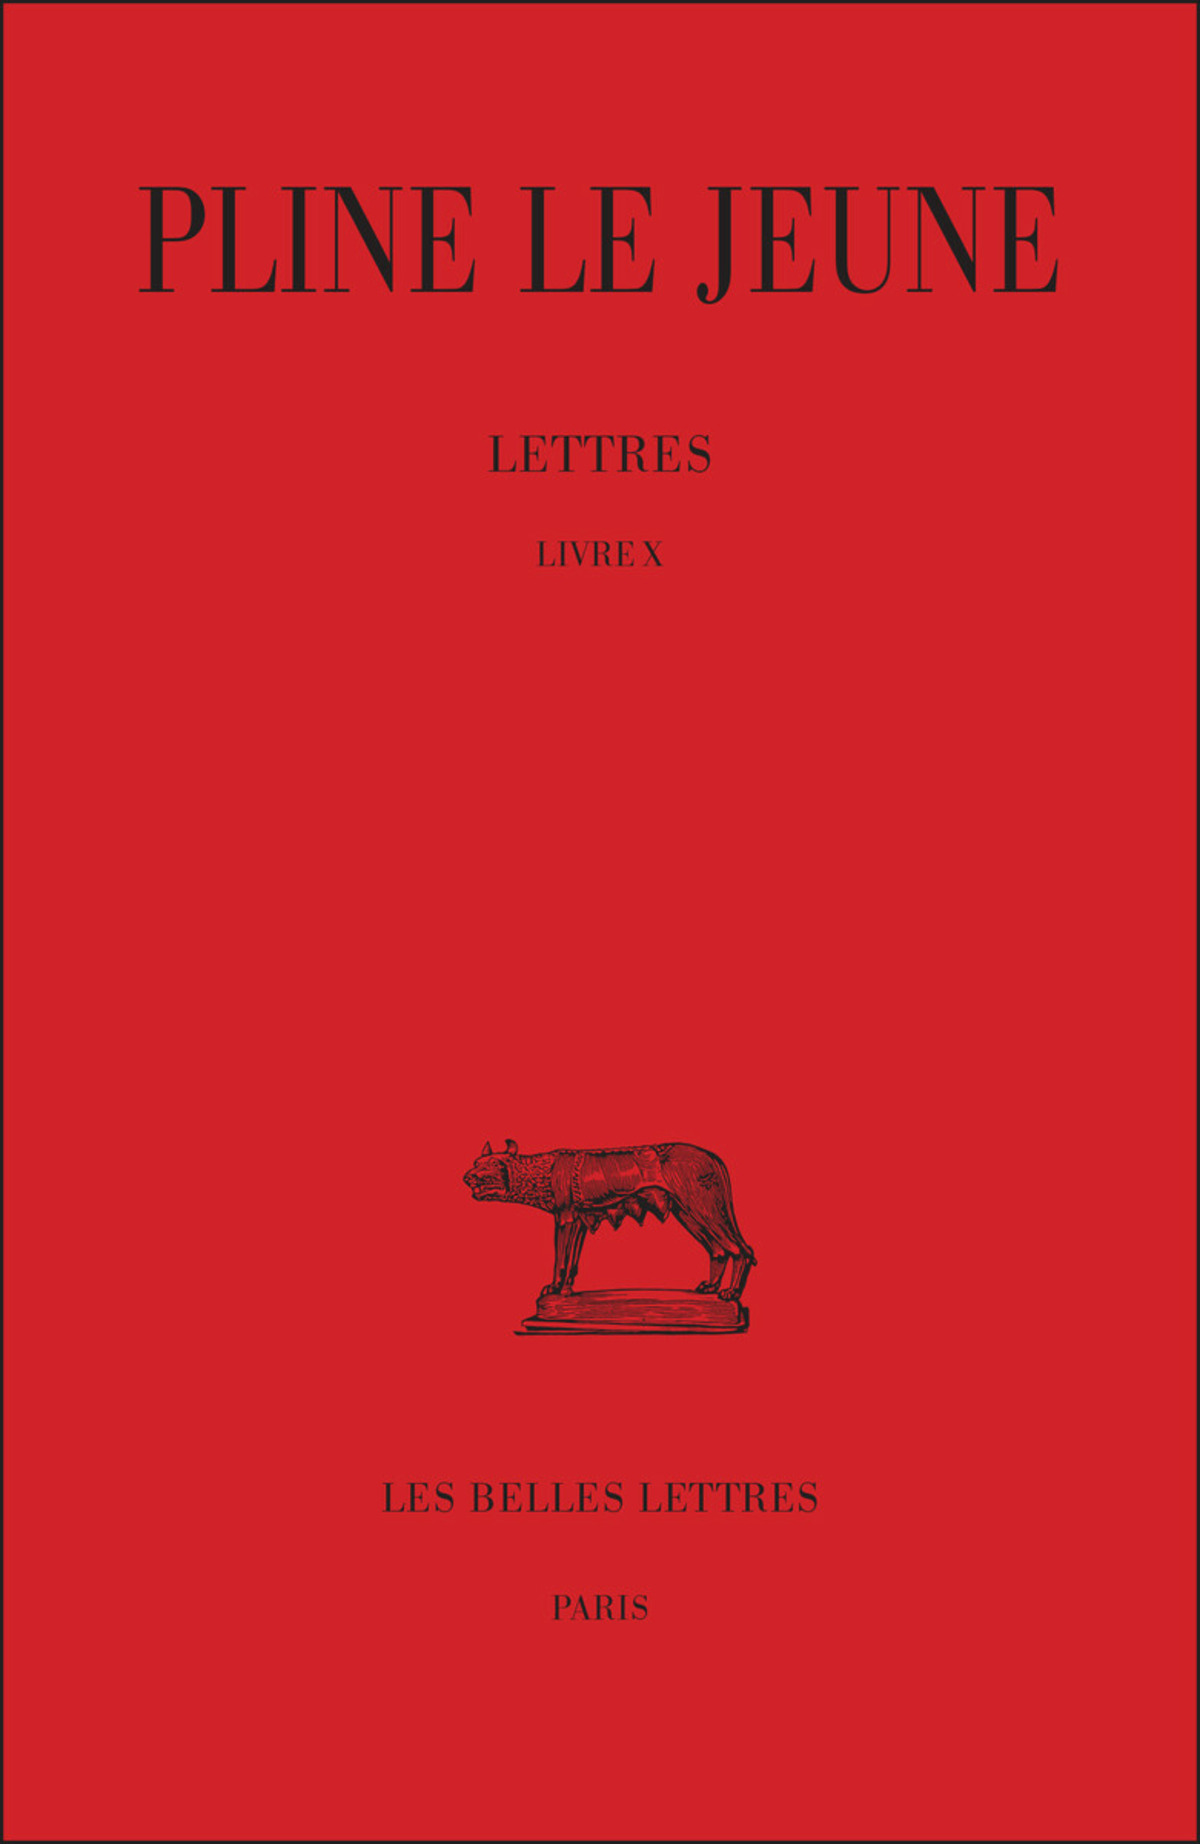 Lettres. Livre X